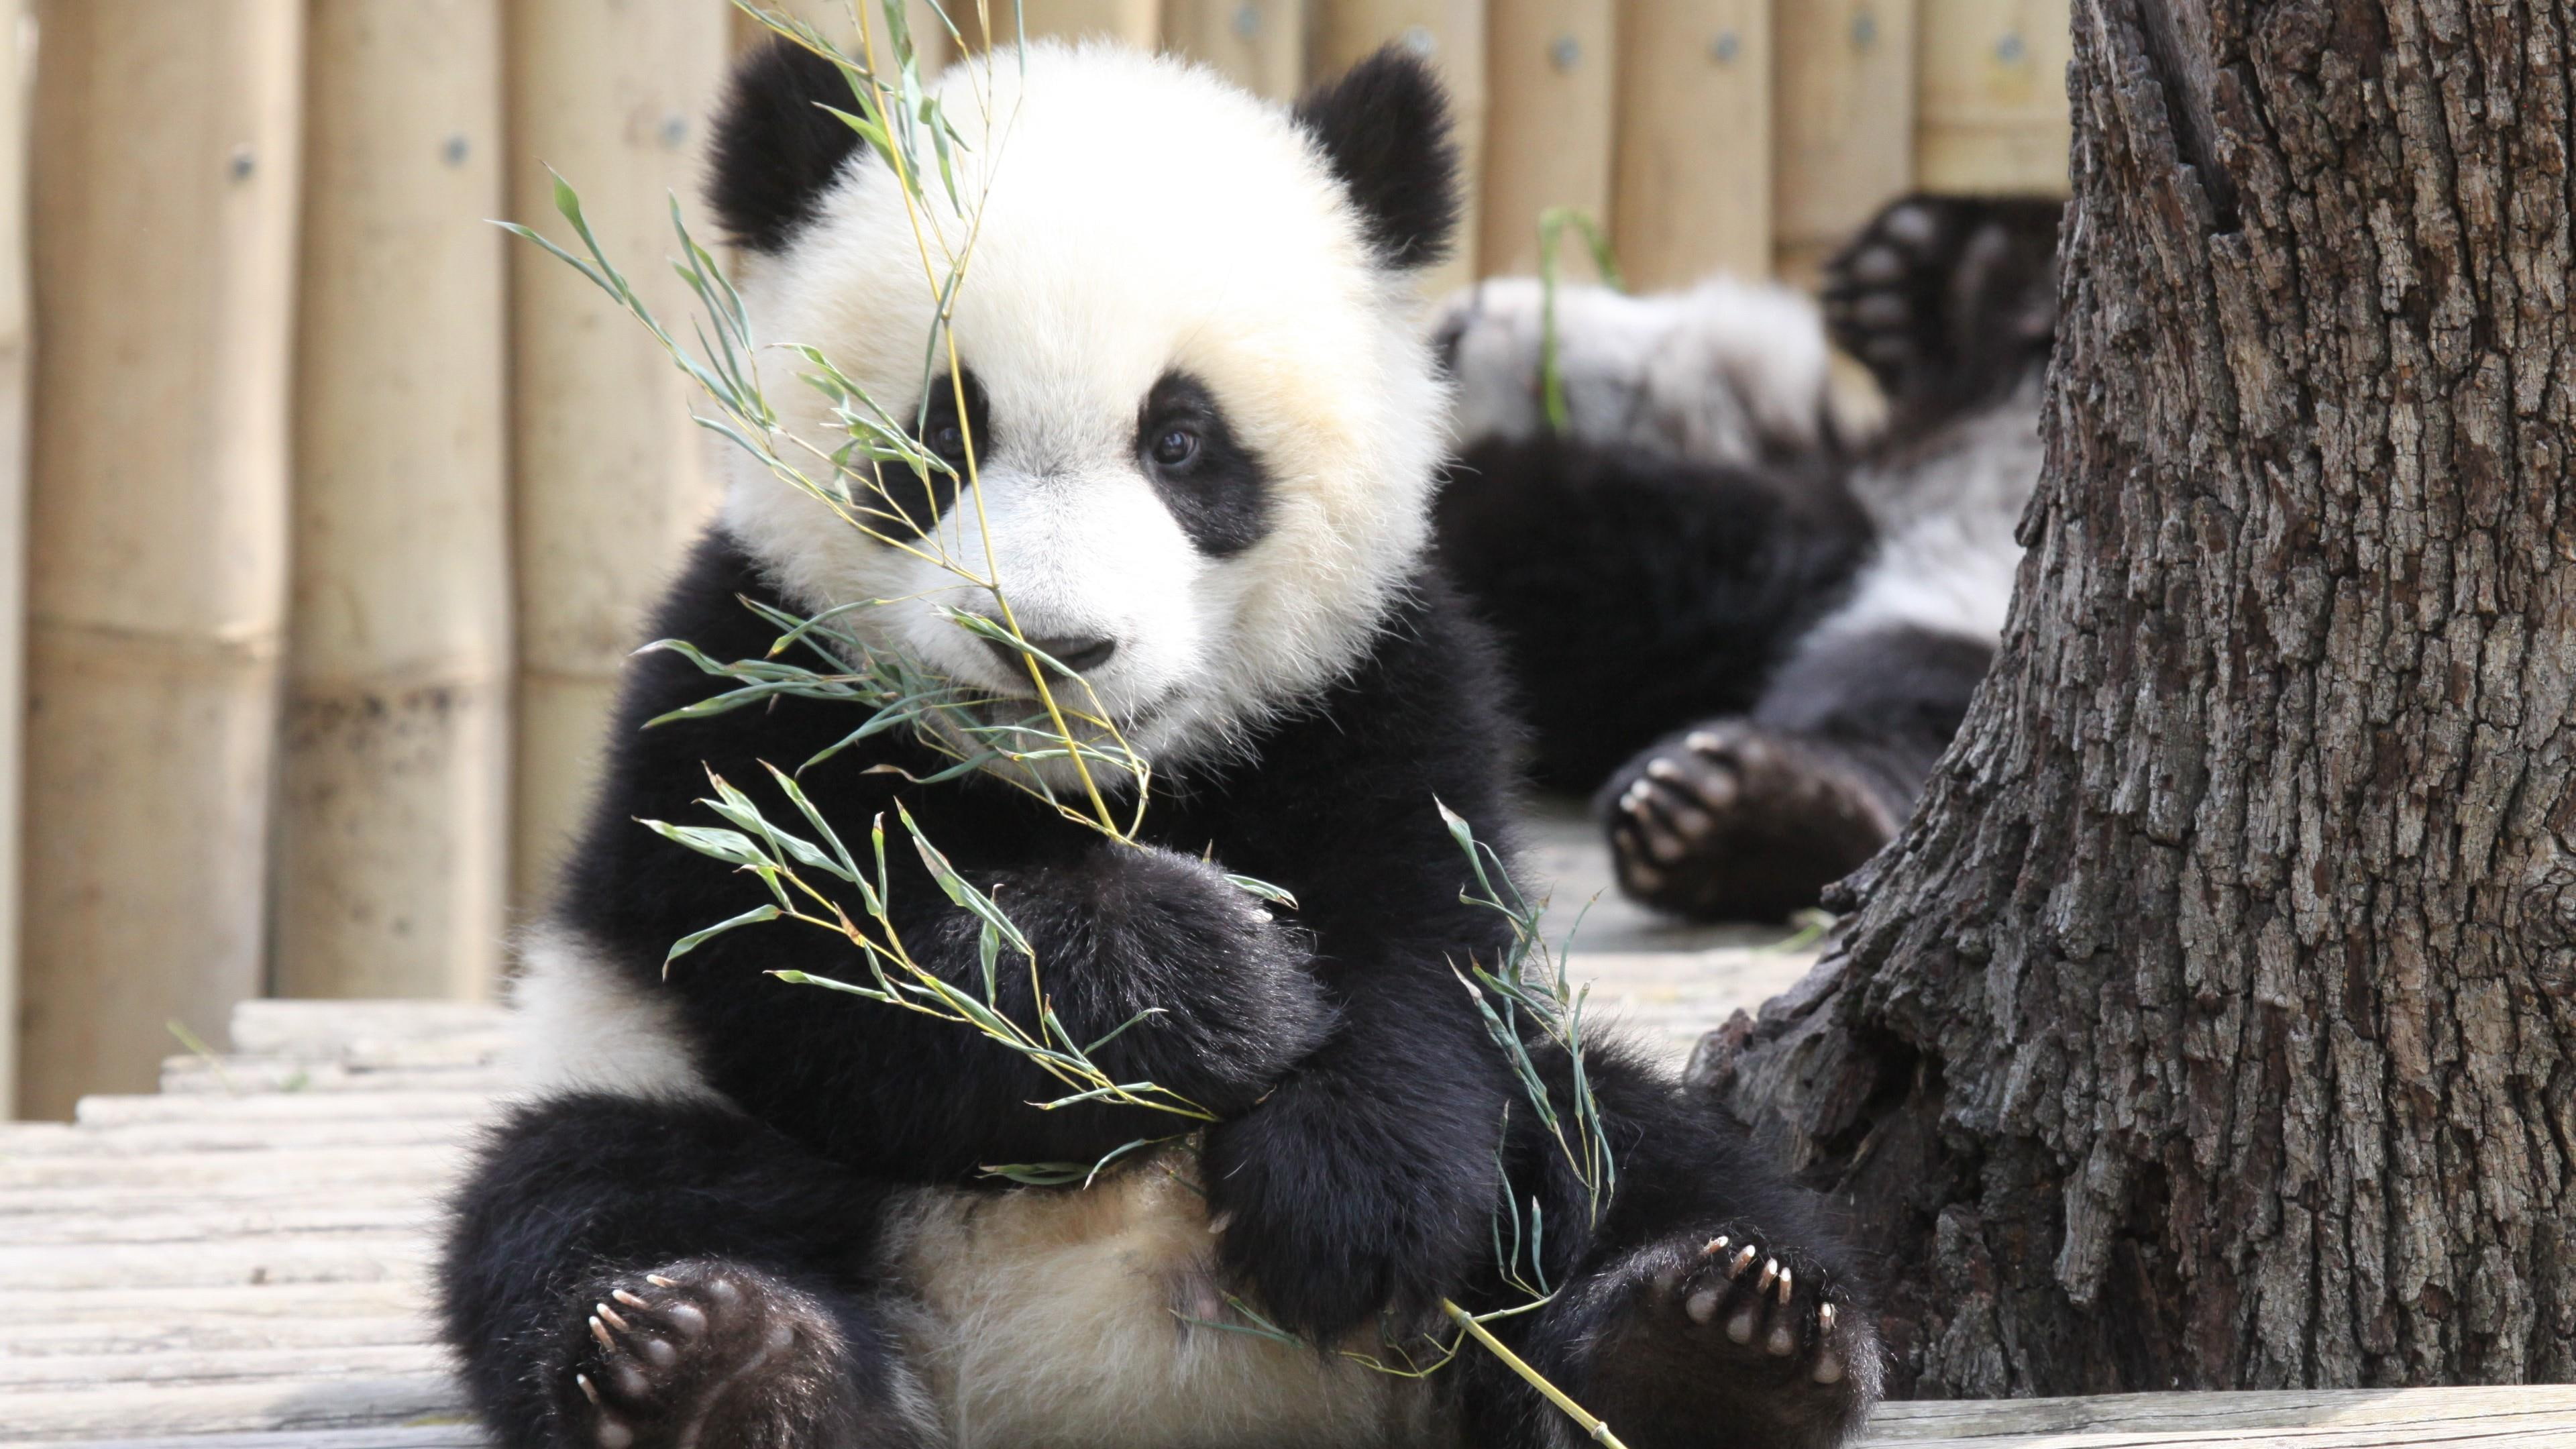 Cute Baby Giant Panda Zoo - HD Wallpaper 